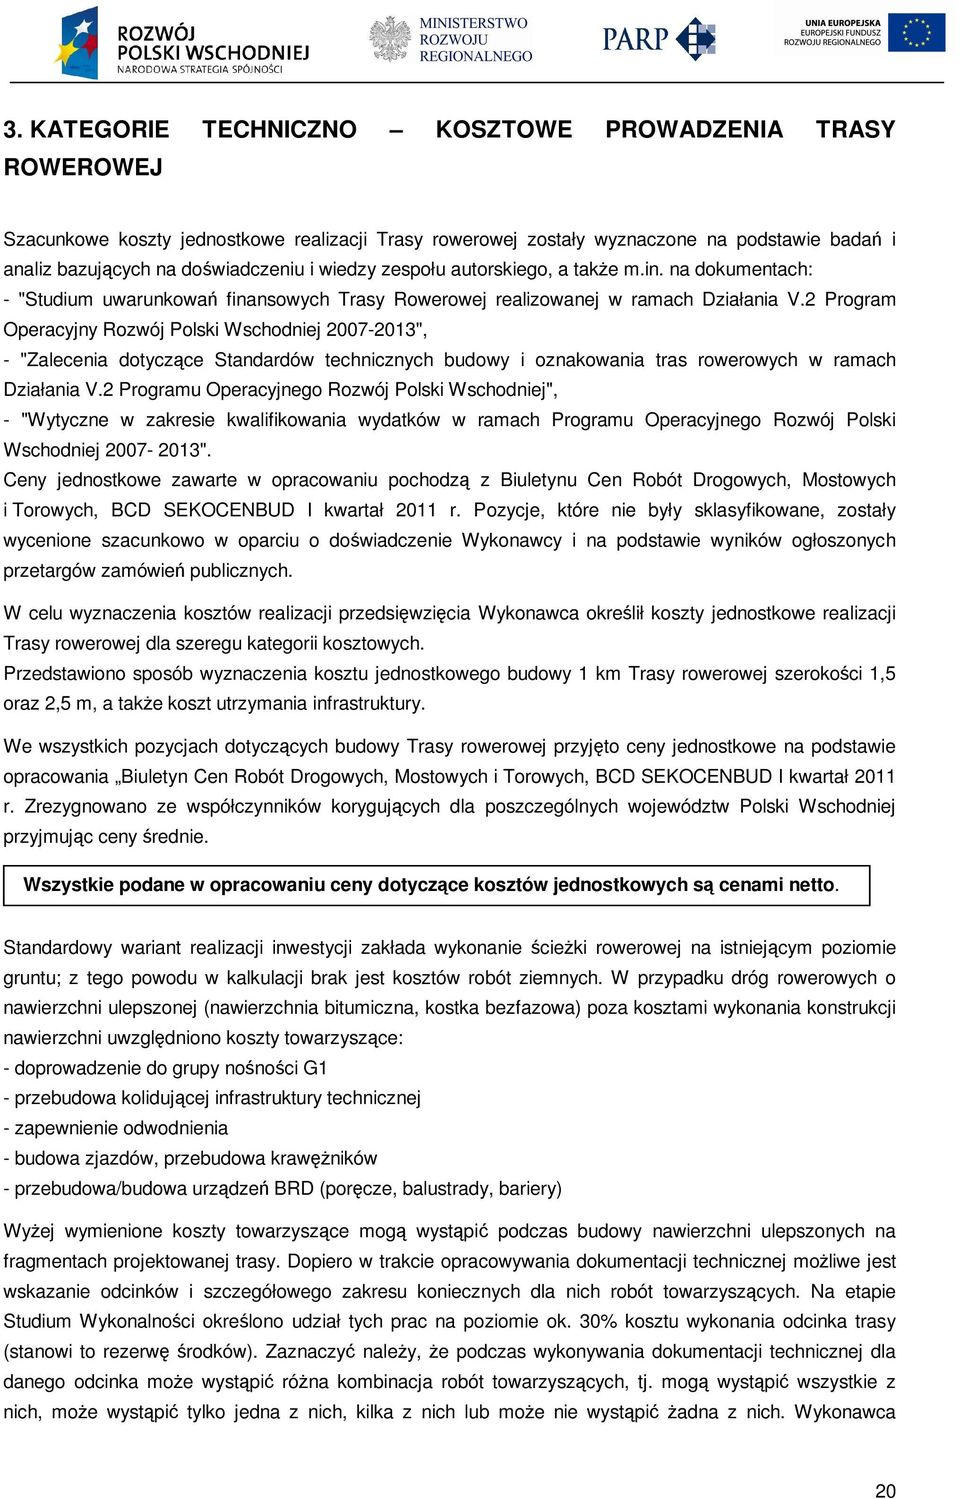 2 Program Operacyjny Rozwój Polski Wschodniej 2007-2013", - "Zalecenia dotyczące Standardów technicznych budowy i oznakowania tras rowerowych w ramach Działania V.